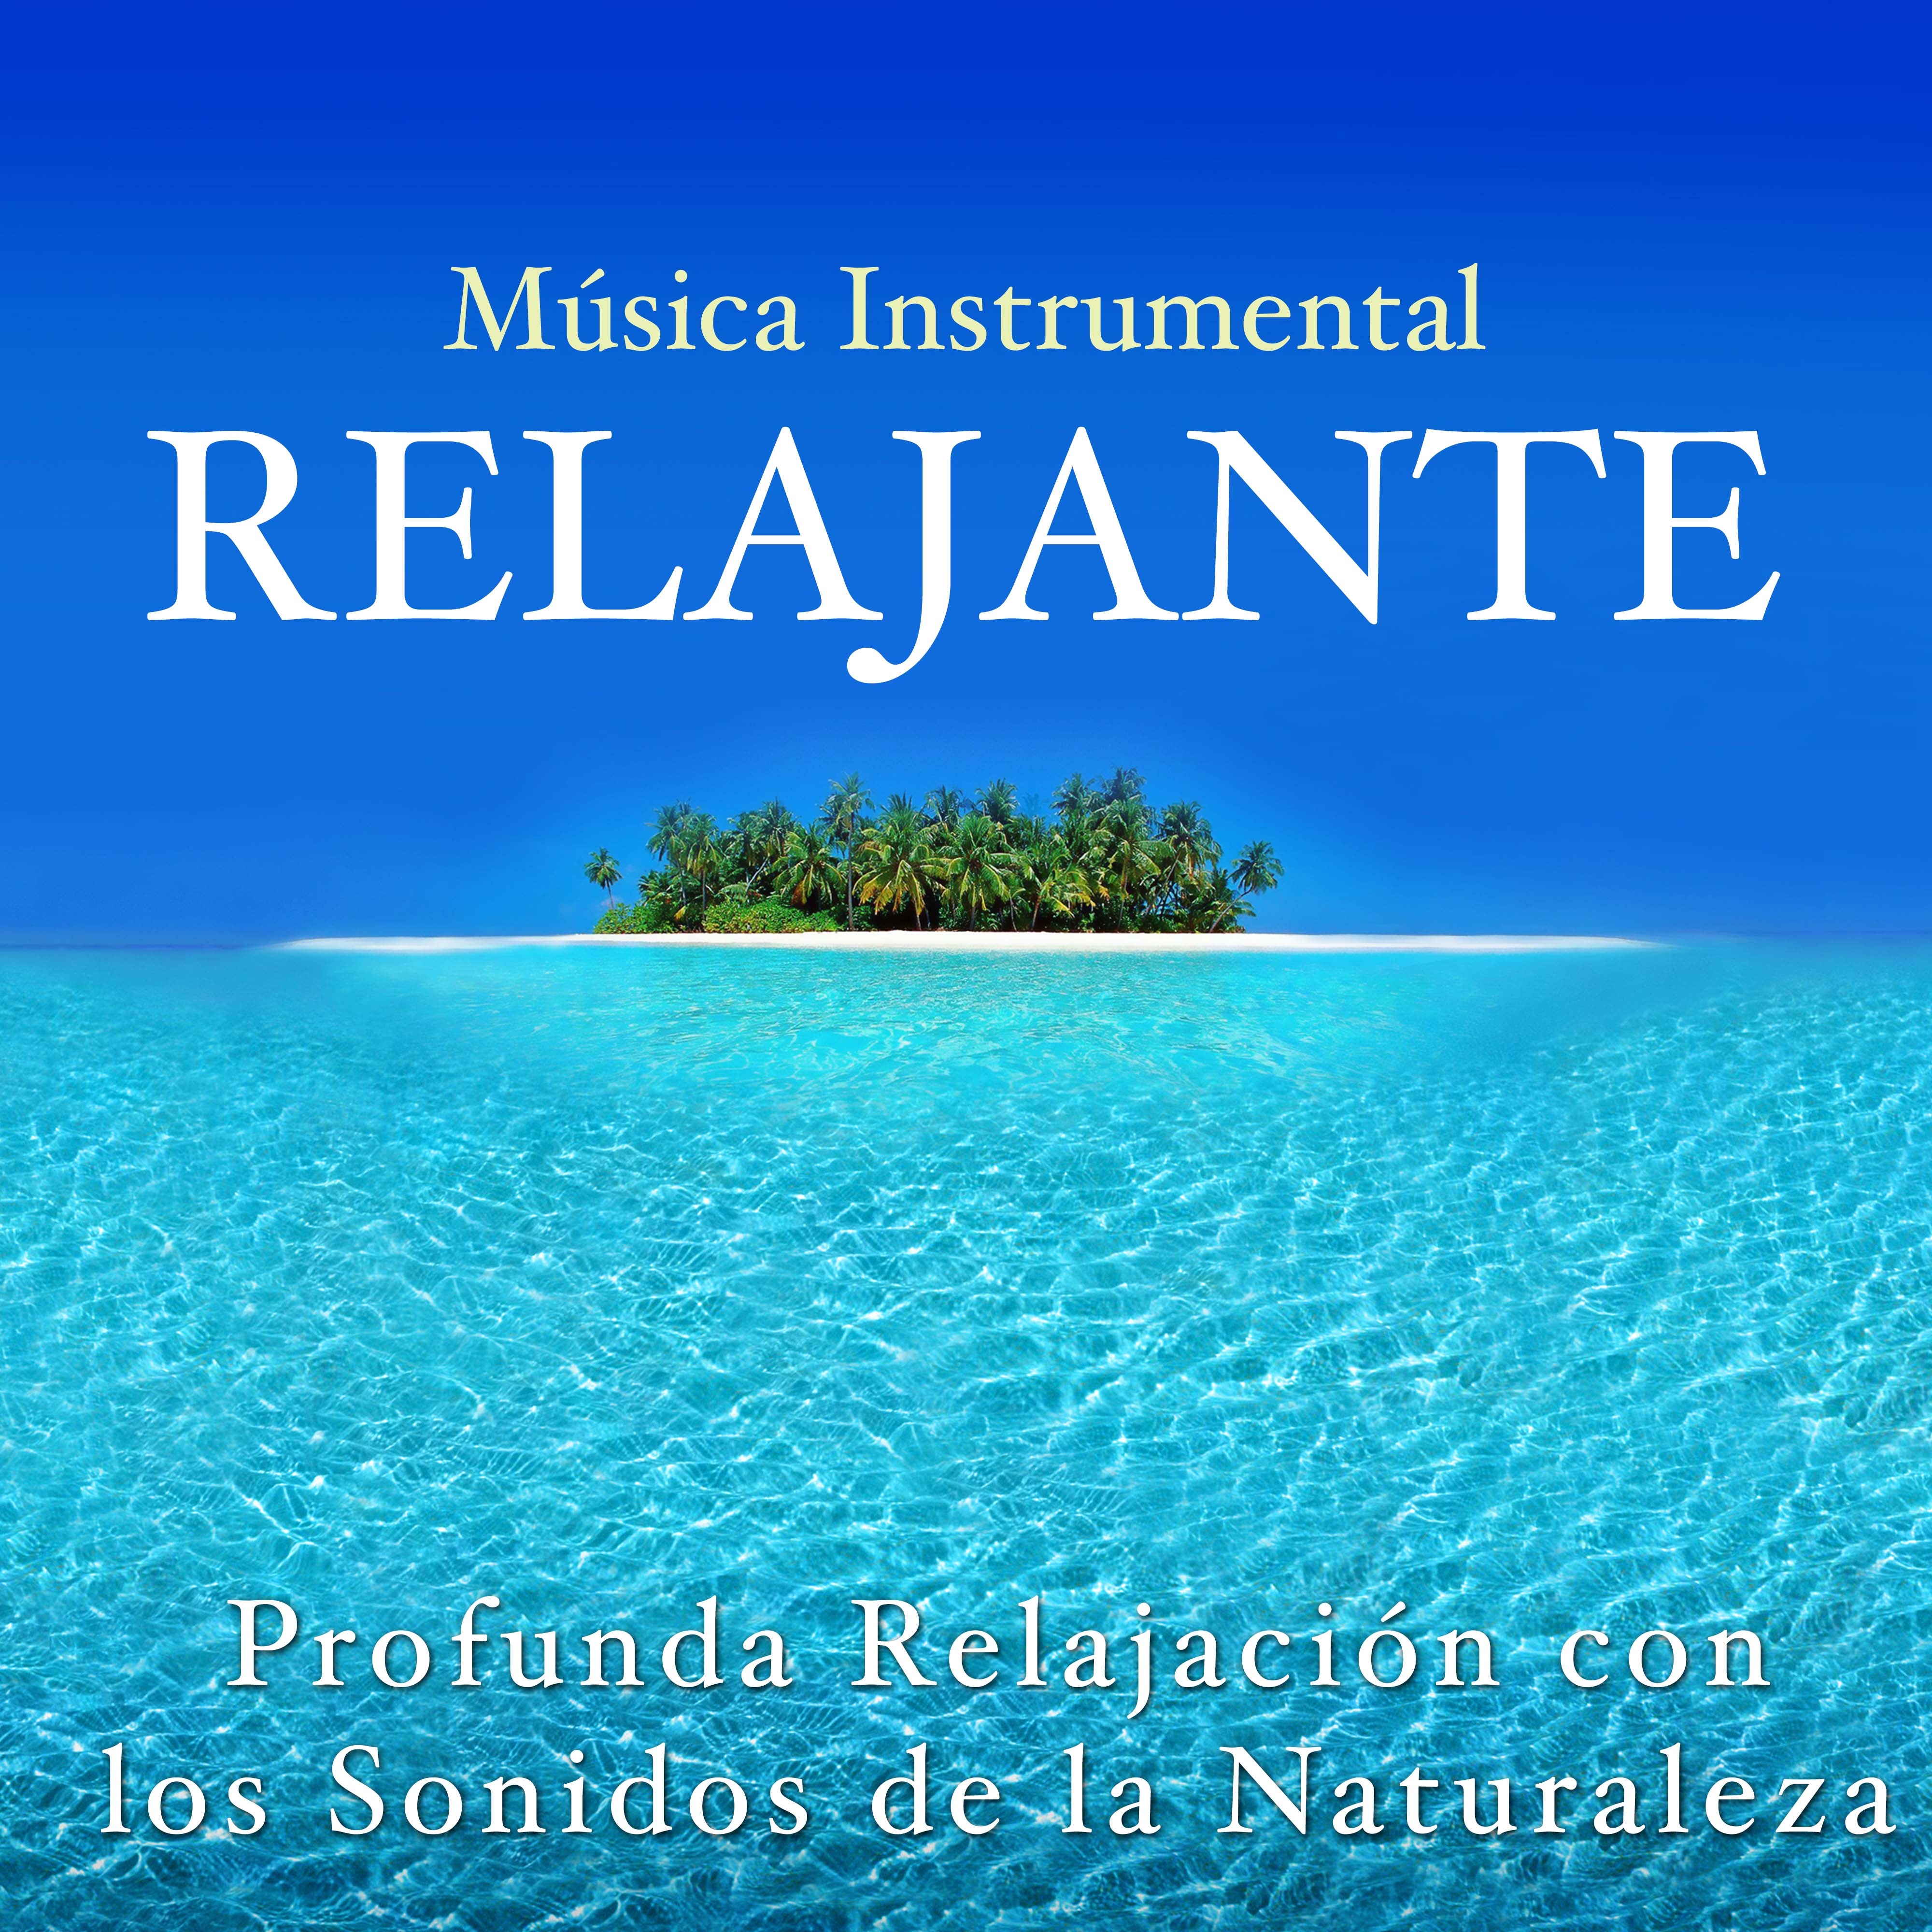 Musica Instrumental Relajante  Profunda Relajacio n con los Sonidos de la Naturaleza